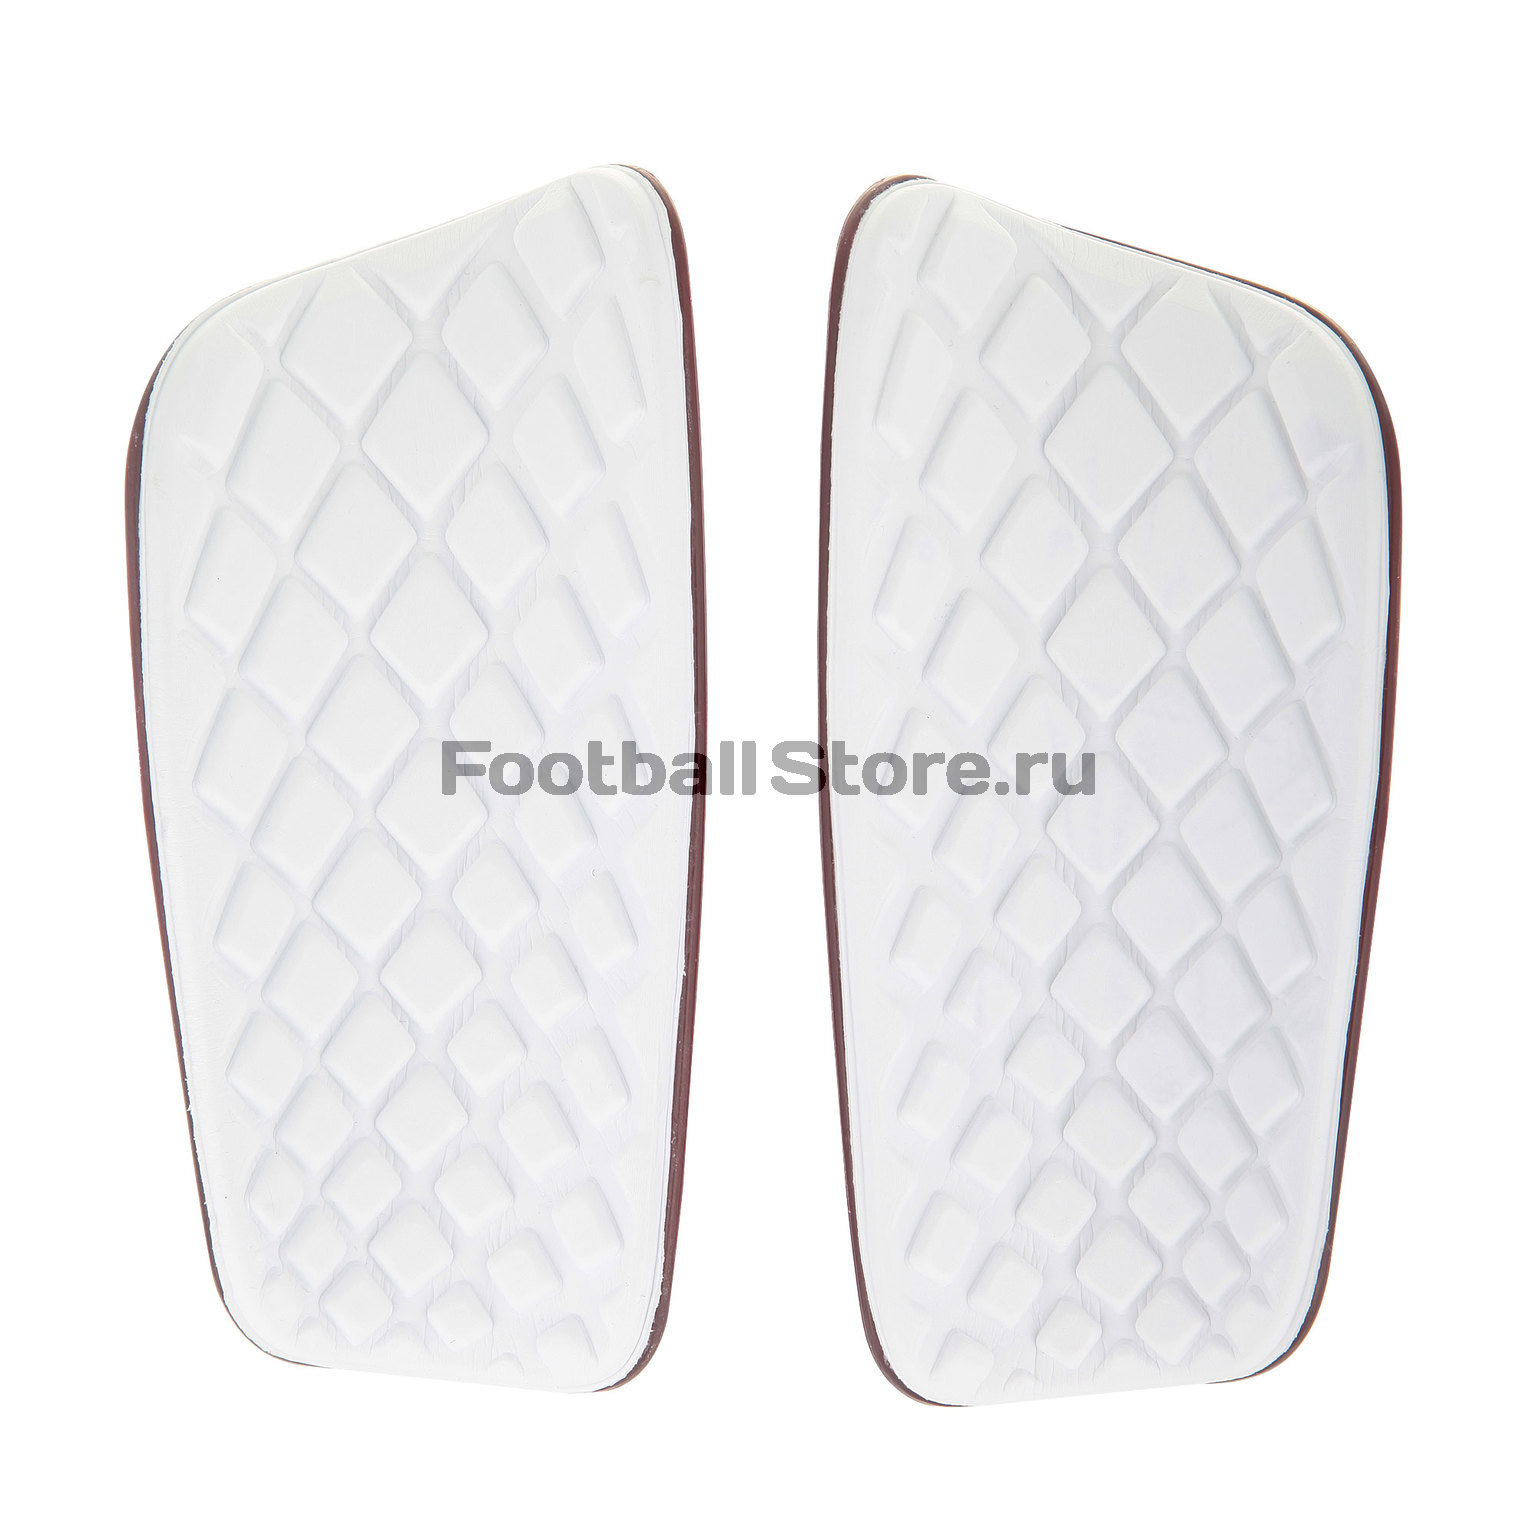 Щитки футбольные Nike Mercurial Lite PSG SP2089-600